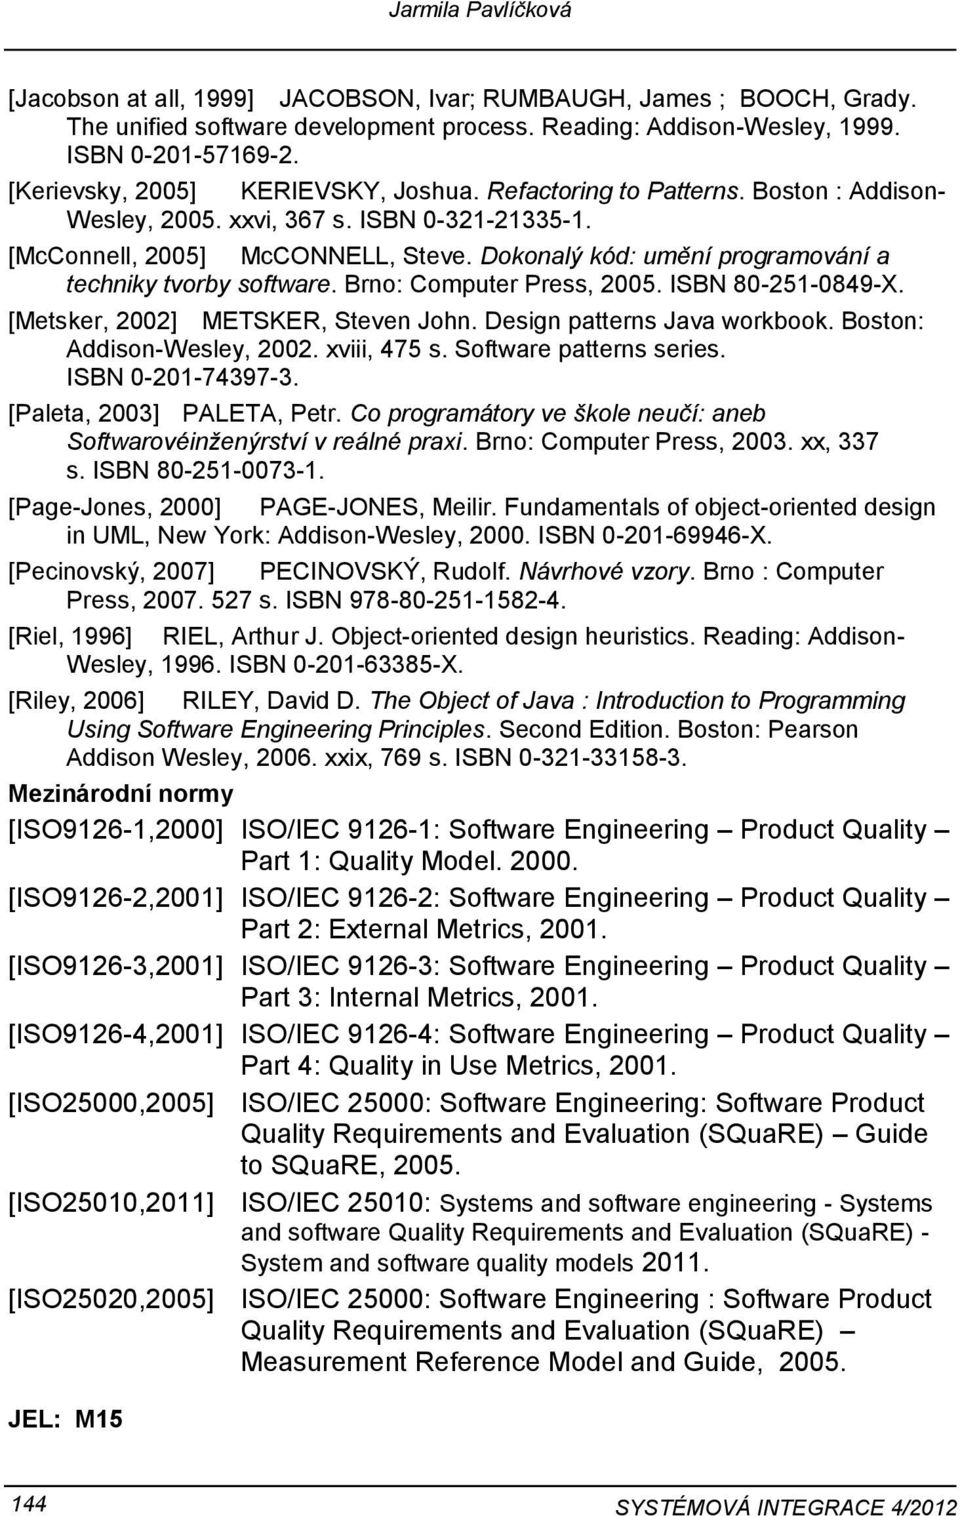 Dknalý kód: umění prgramvání a techniky tvrby sftware. Brn: Cmputer Press, 2005. ISBN 80-251-0849-X. [Metsker, 2002] METSKER, Steven Jhn. Design patterns Java wrkbk. Bstn: Addisn-Wesley, 2002.